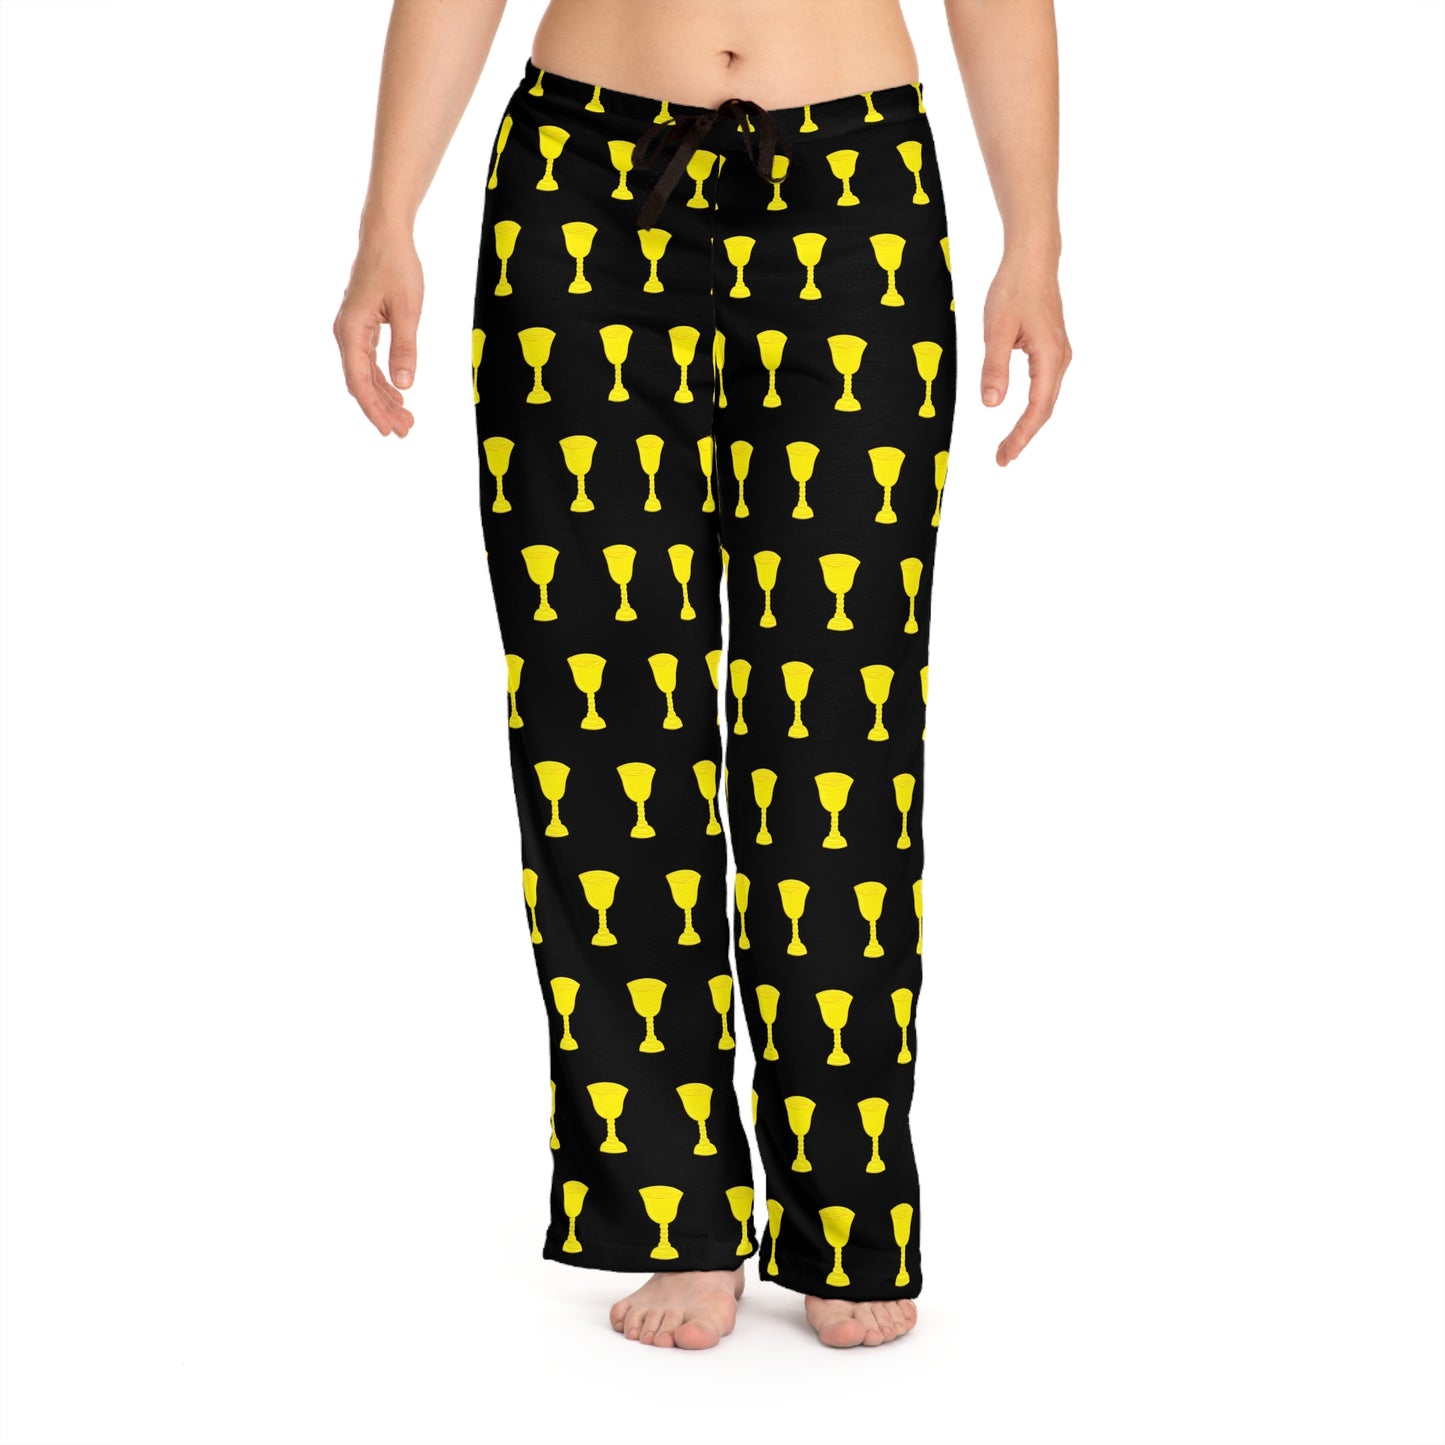 Tarot Pajama Pants - Suit of Cups